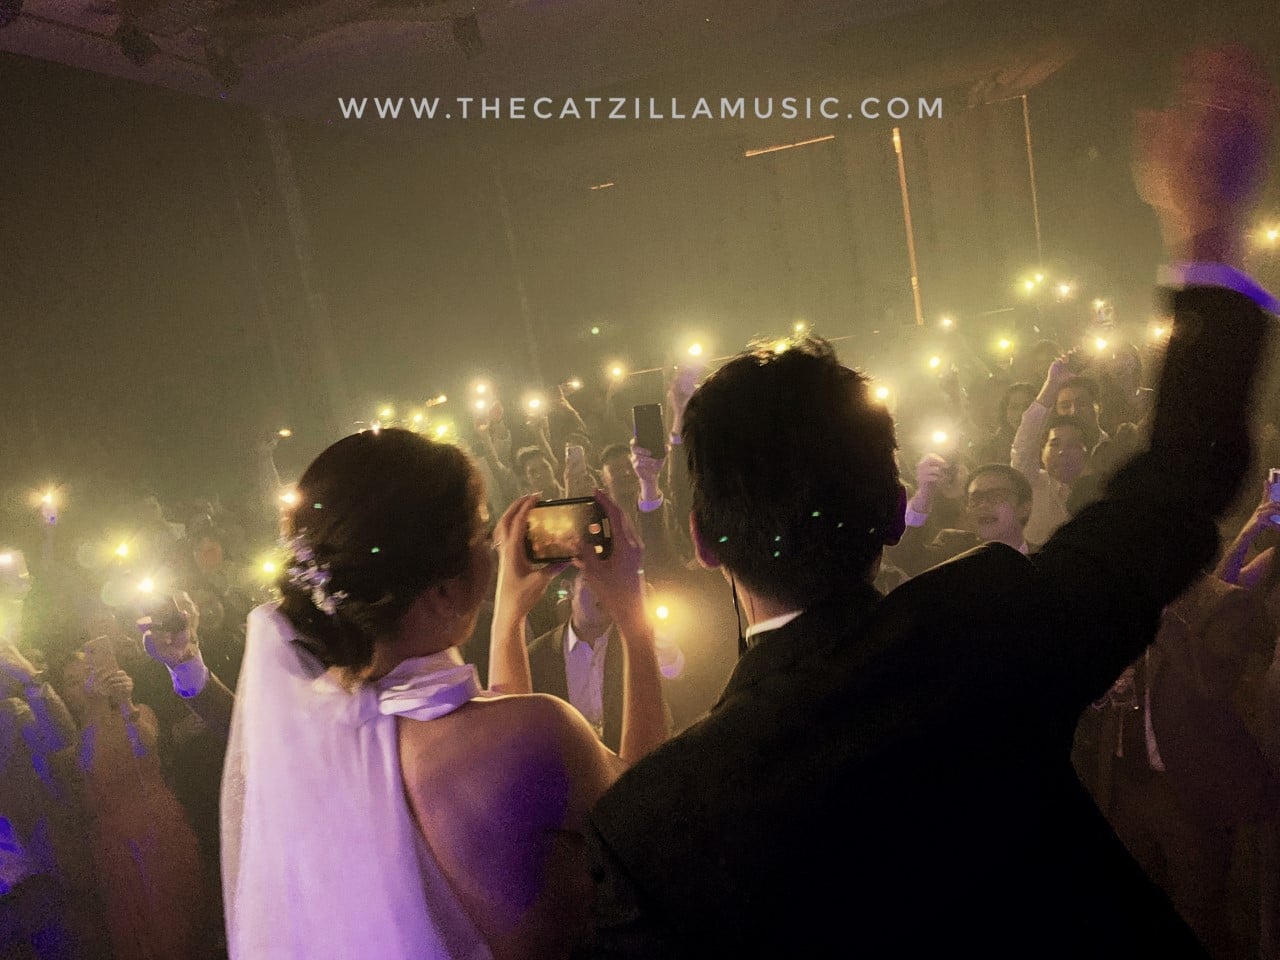 แนะนำ วงดนตรีงานแต่งงาน ยอดนิยม สุดมันส์ บุ๋นแบนด์ By Catzilla Music